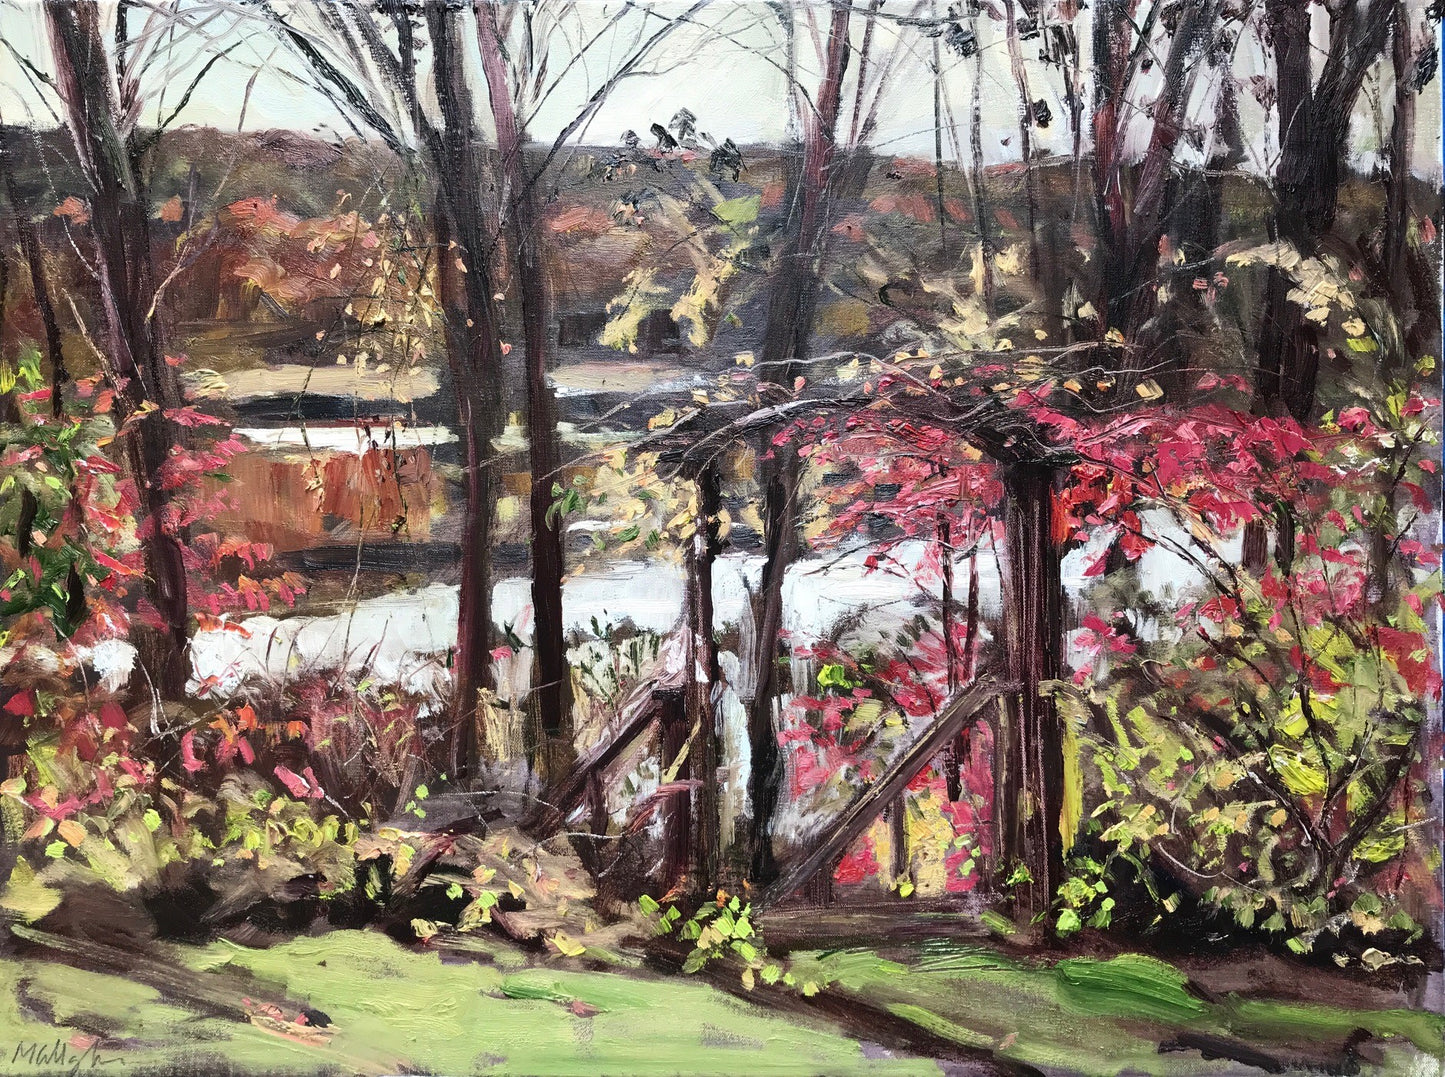 Autumn, Upton Lake through the Trees, November 11th, 2021